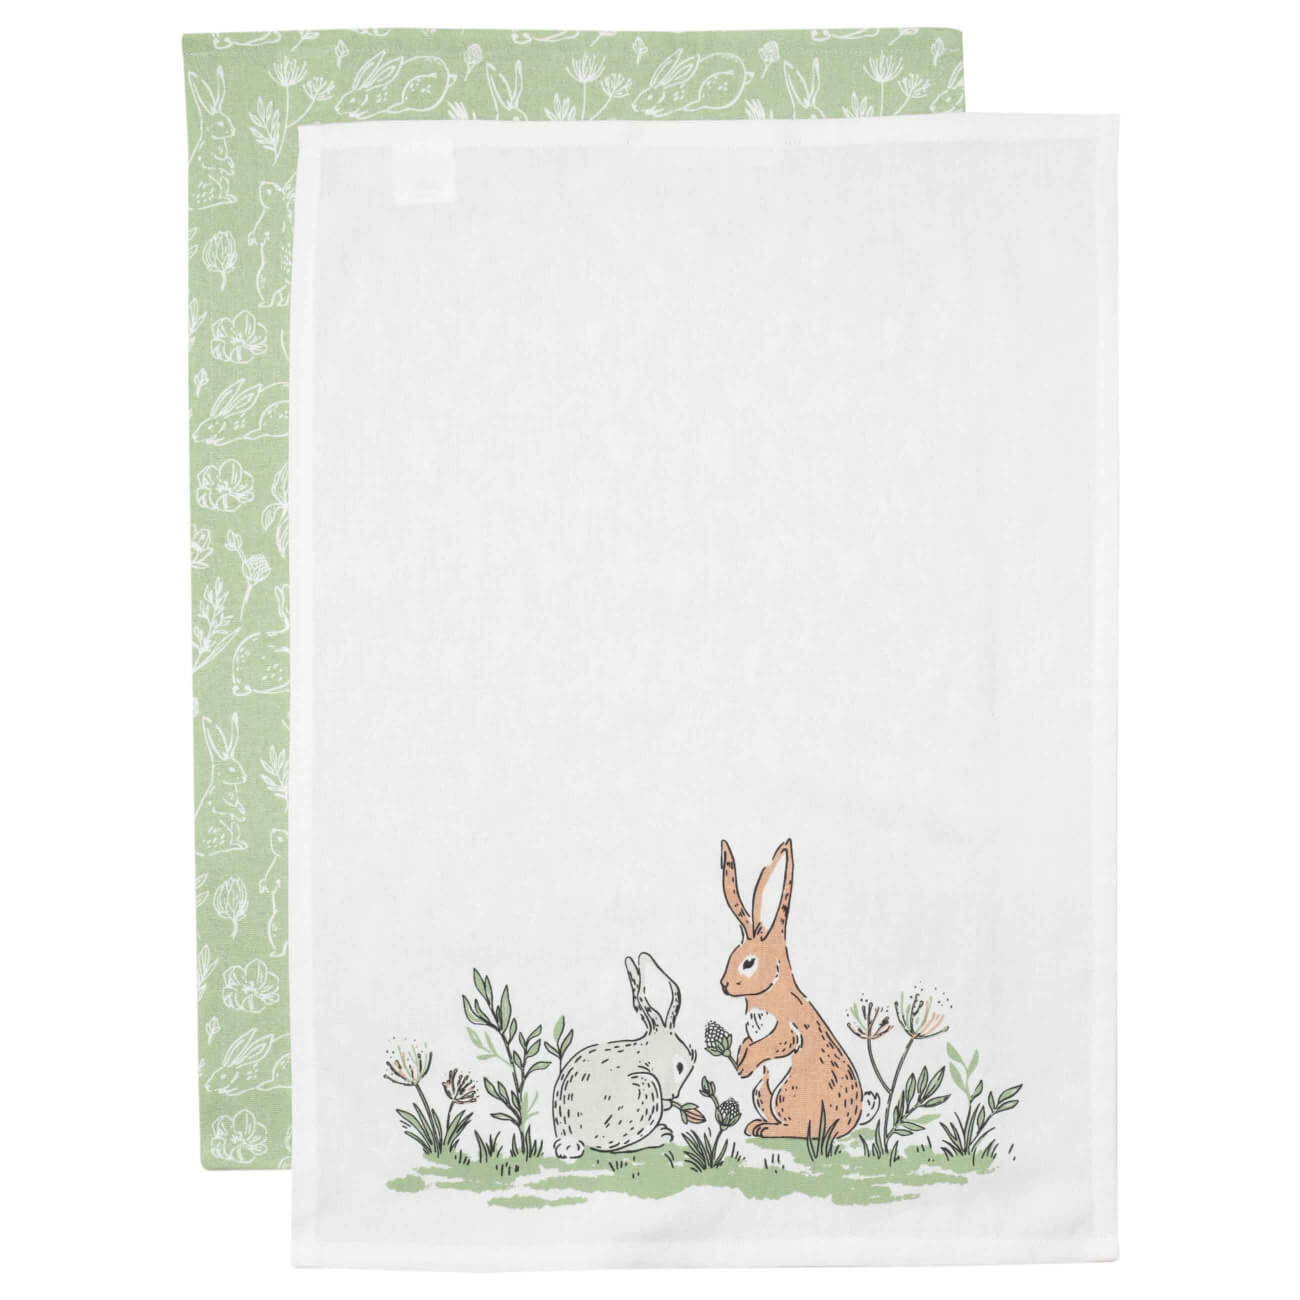 Полотенце кухонное, 40х60 см, 2 шт, хлопок, белое/зеленое, Кролики, Easter полотенце кухонное 40x60 см хлопок белое кролики easter